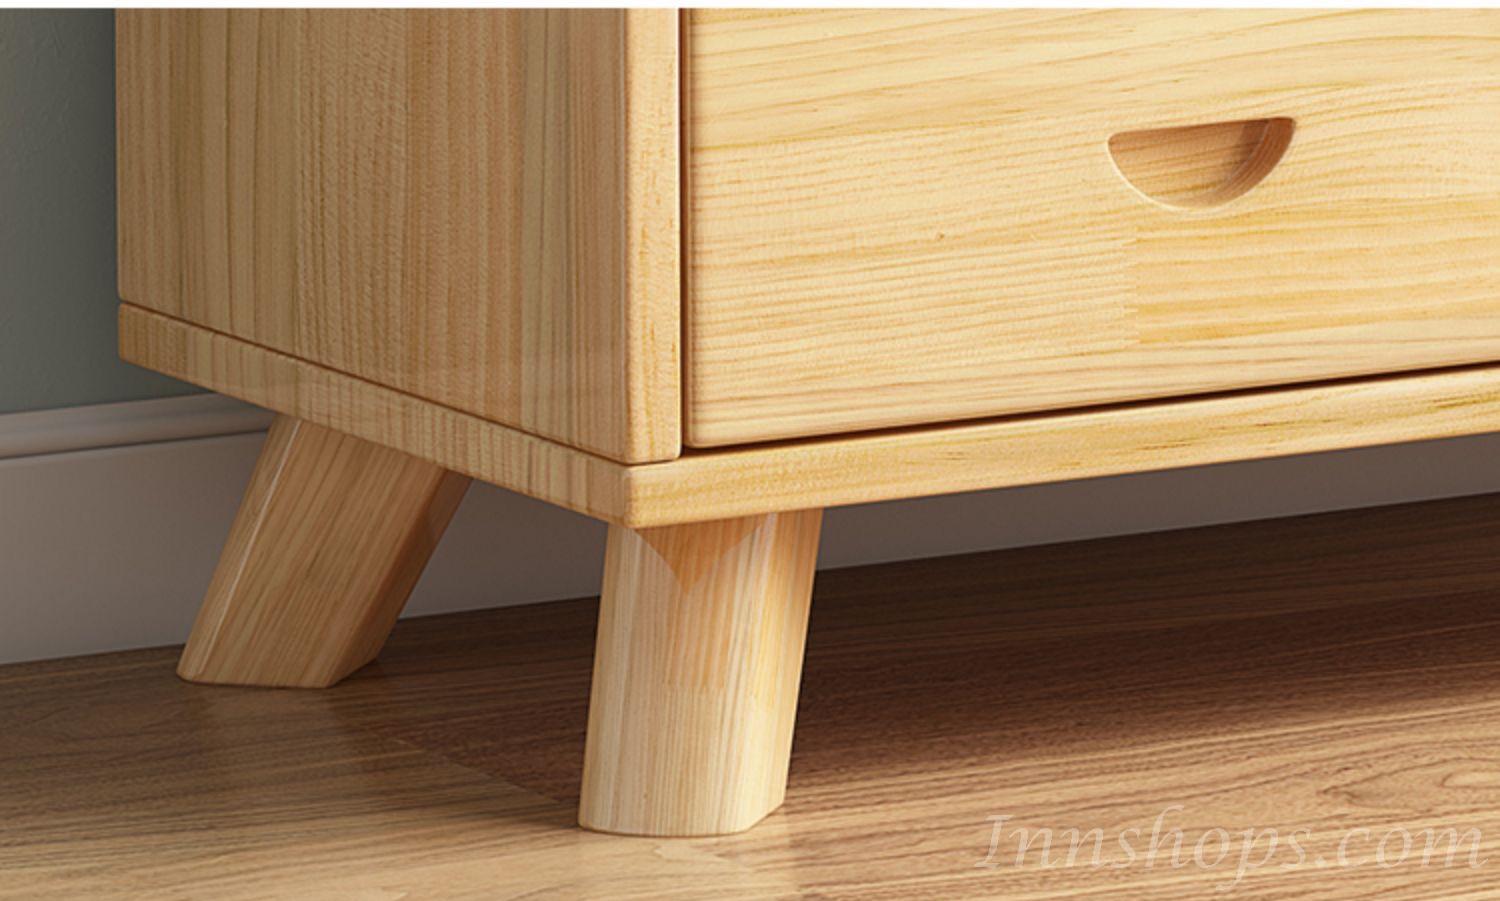 芬蘭松木系列 實木書櫃80cm (IS7370)